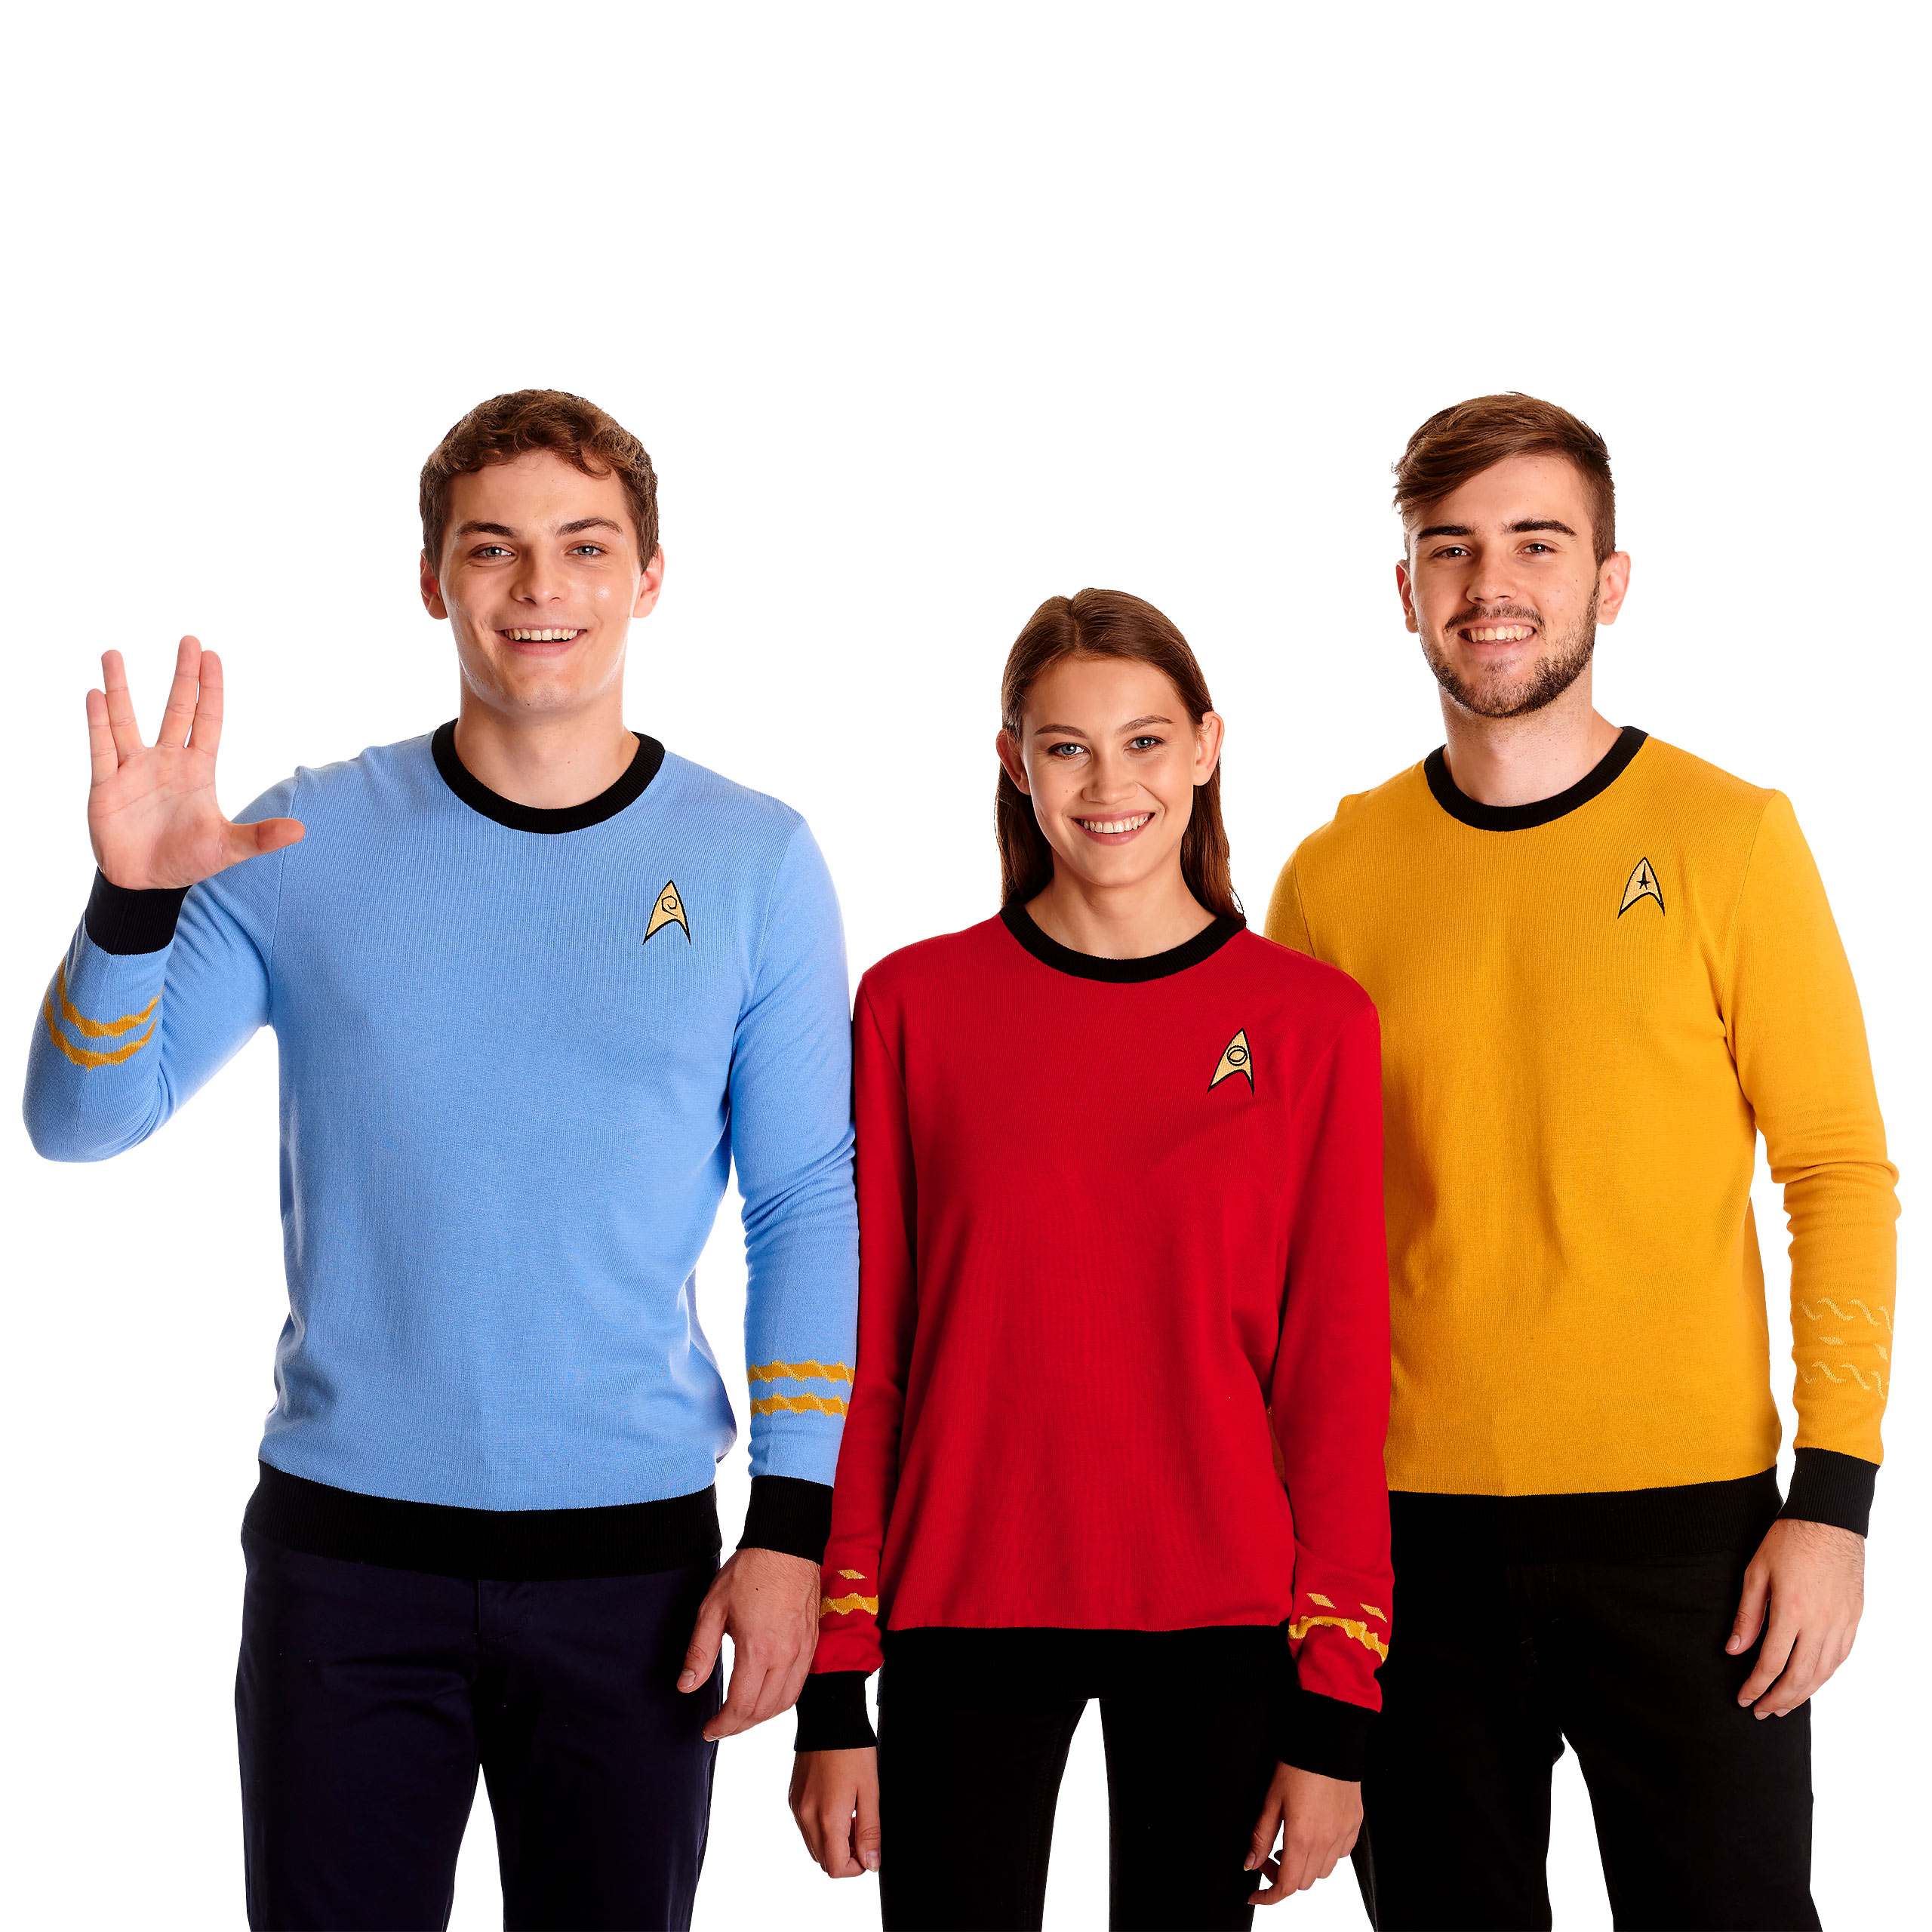 Star Trek - Pull en tricot uniforme de Mister Spock bleu